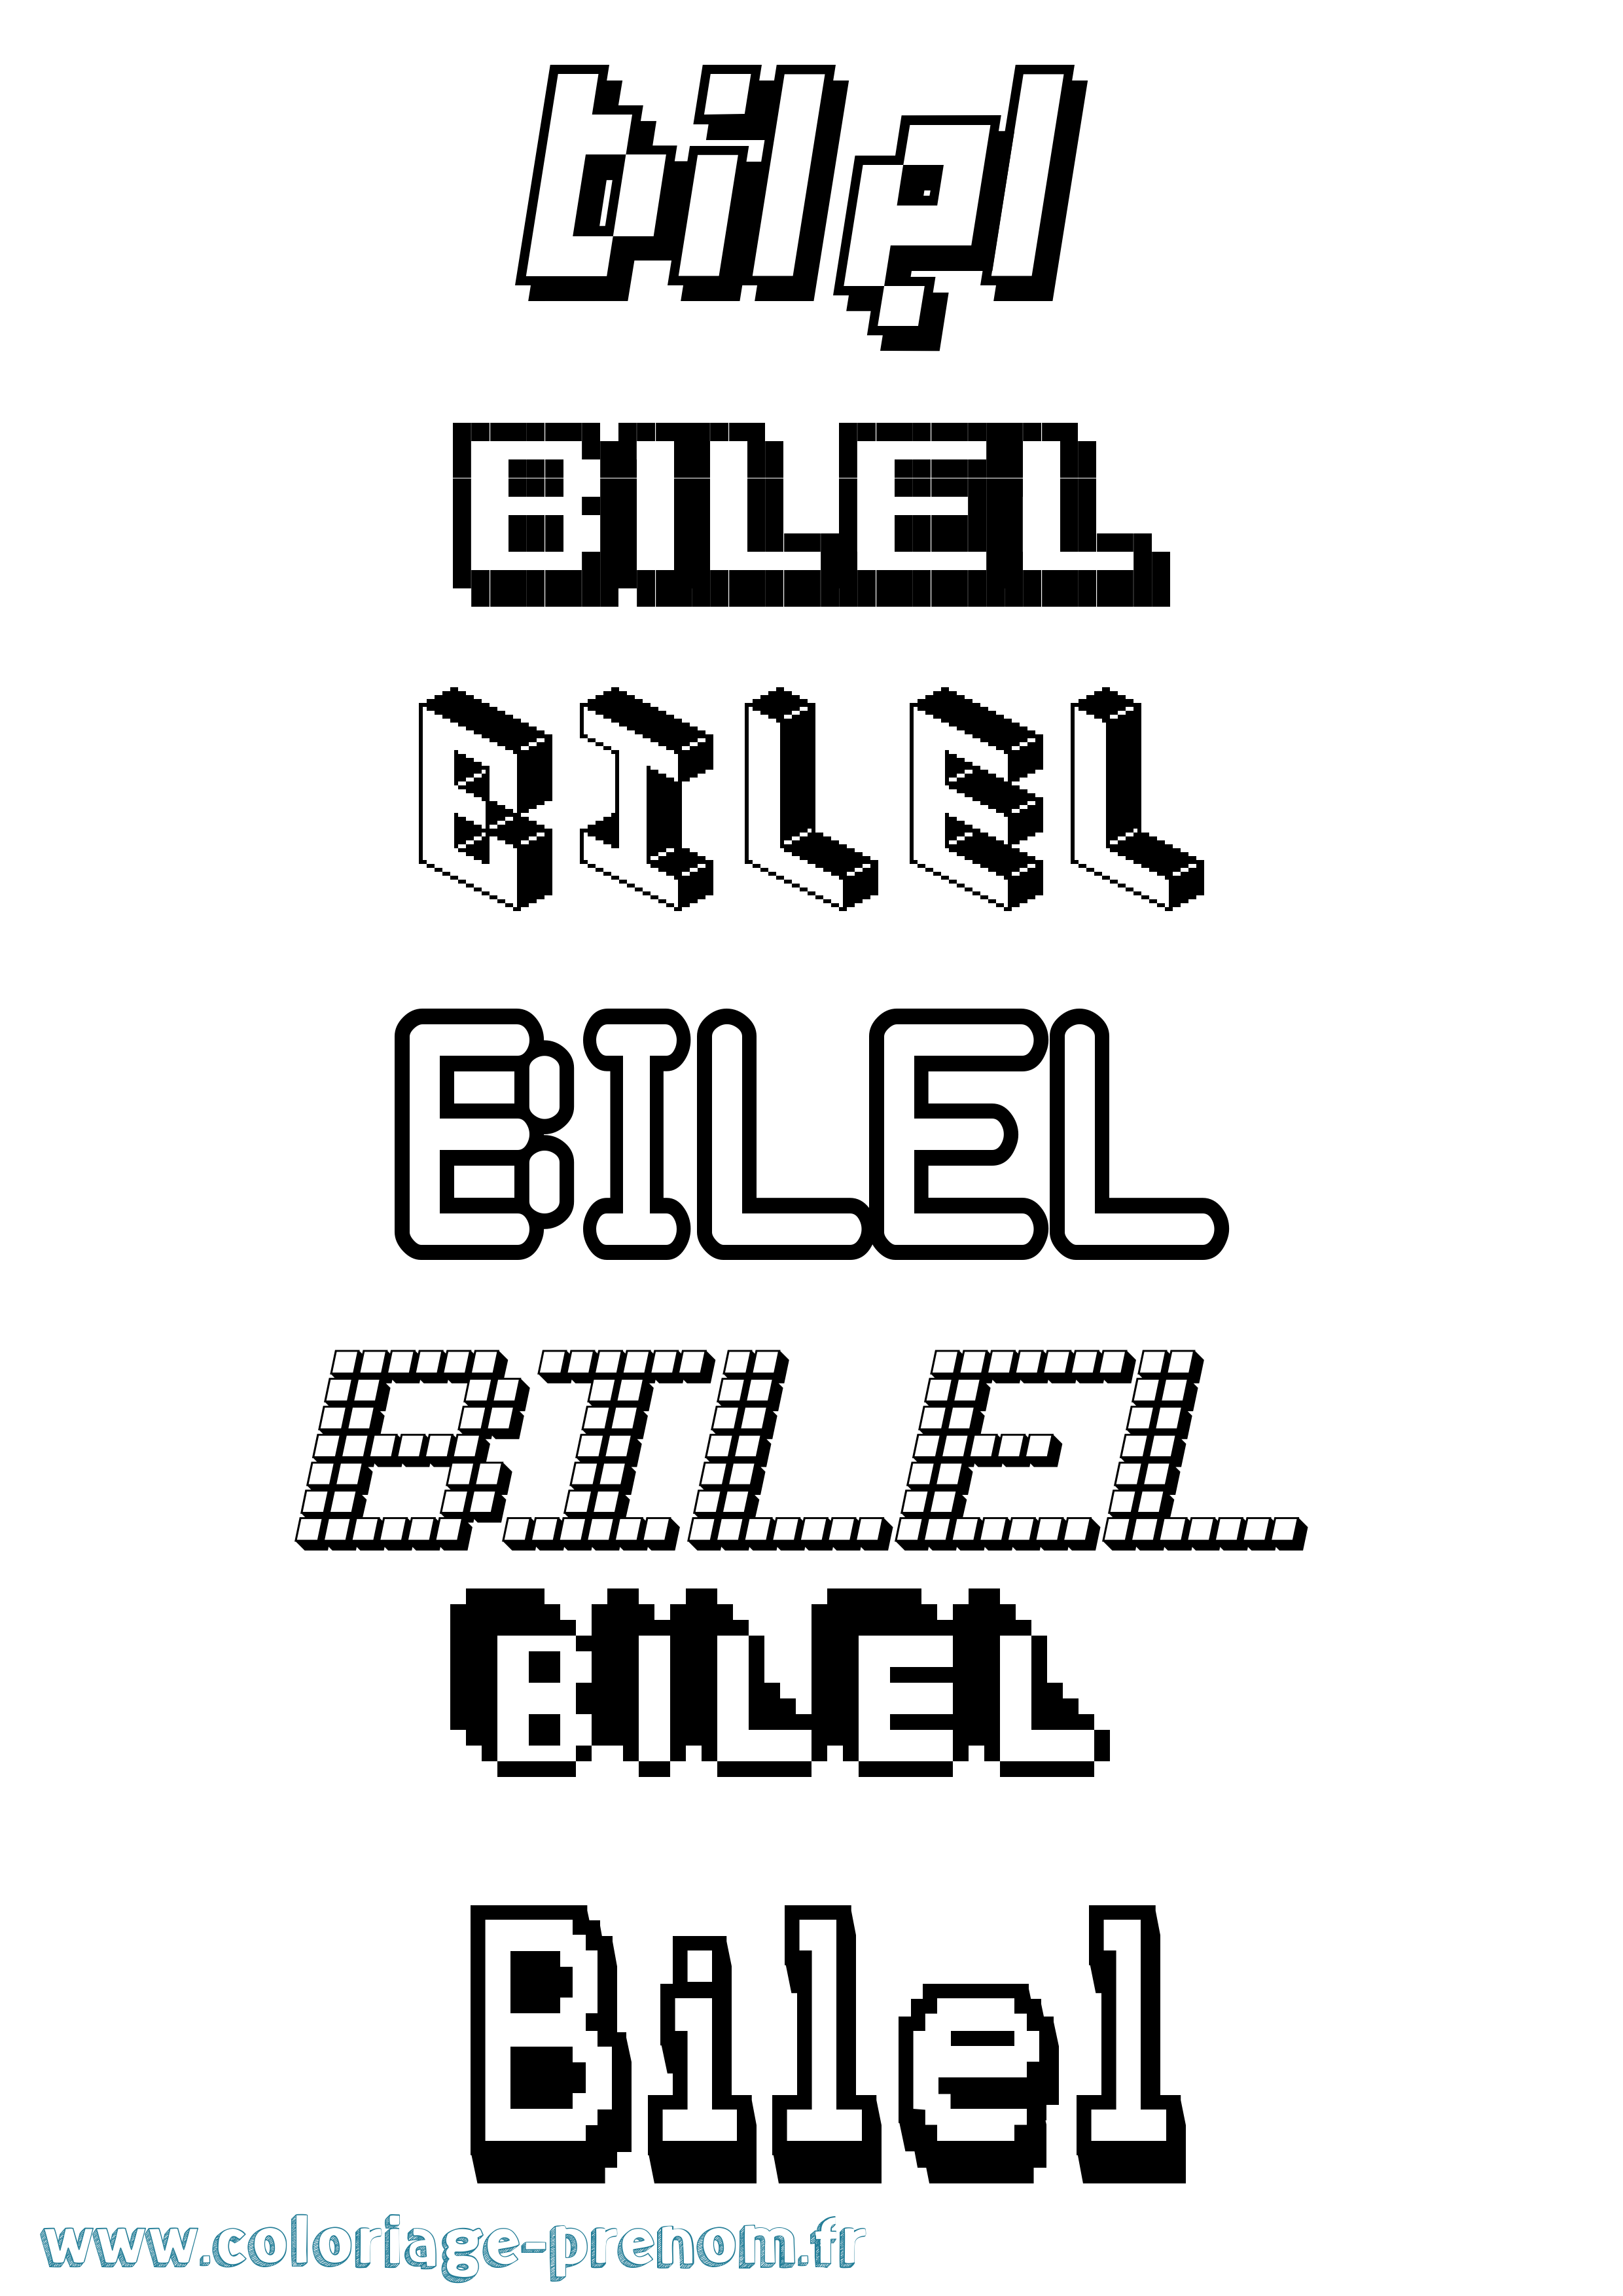 Coloriage prénom Bilel